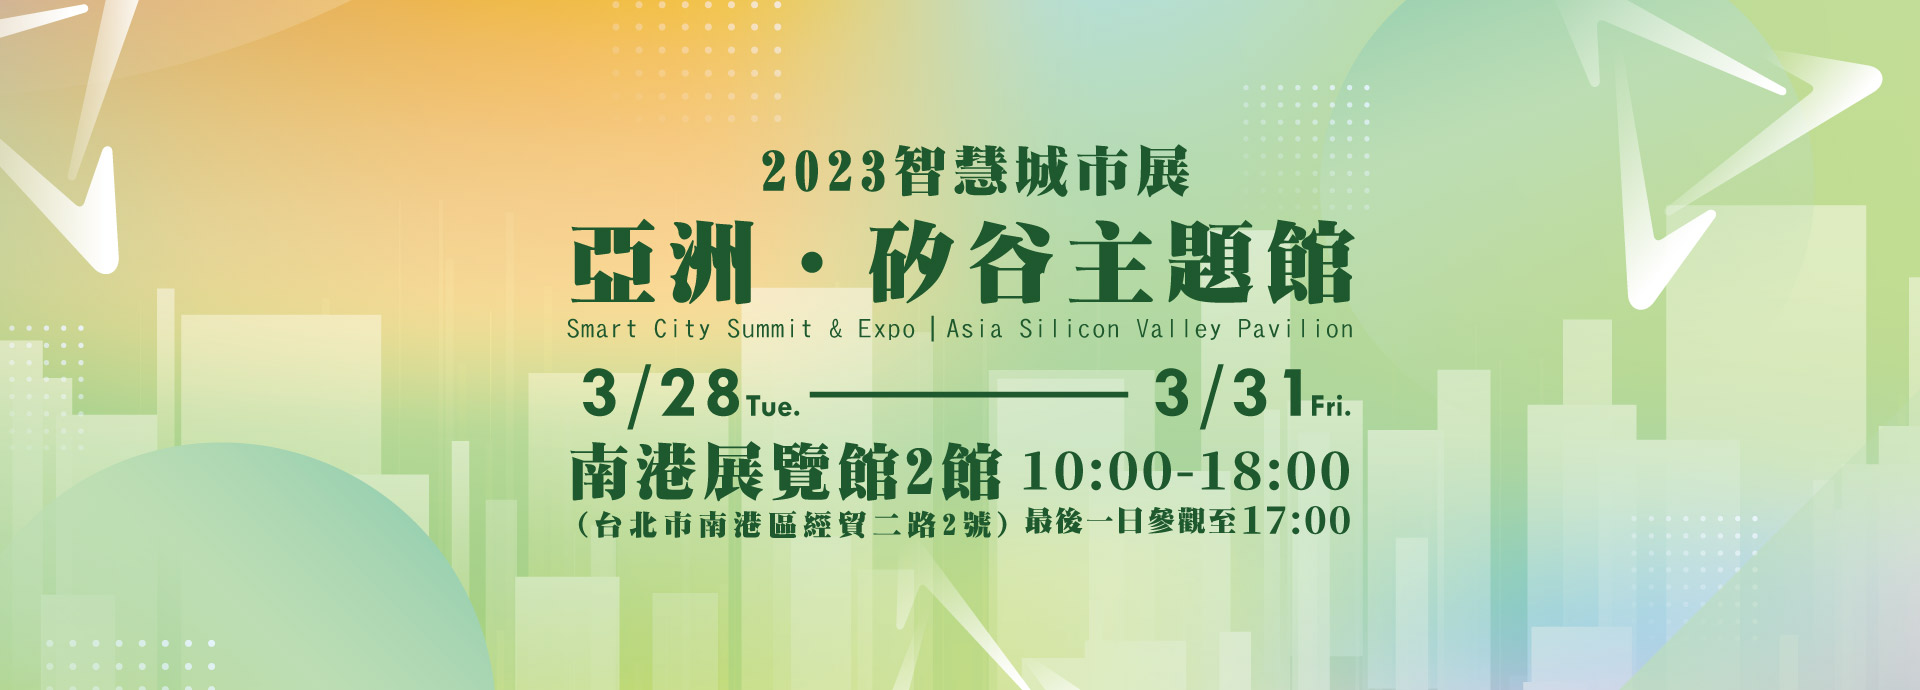 智慧城市展「亞洲・矽谷主題館」 邀您數位創新共創永續未來